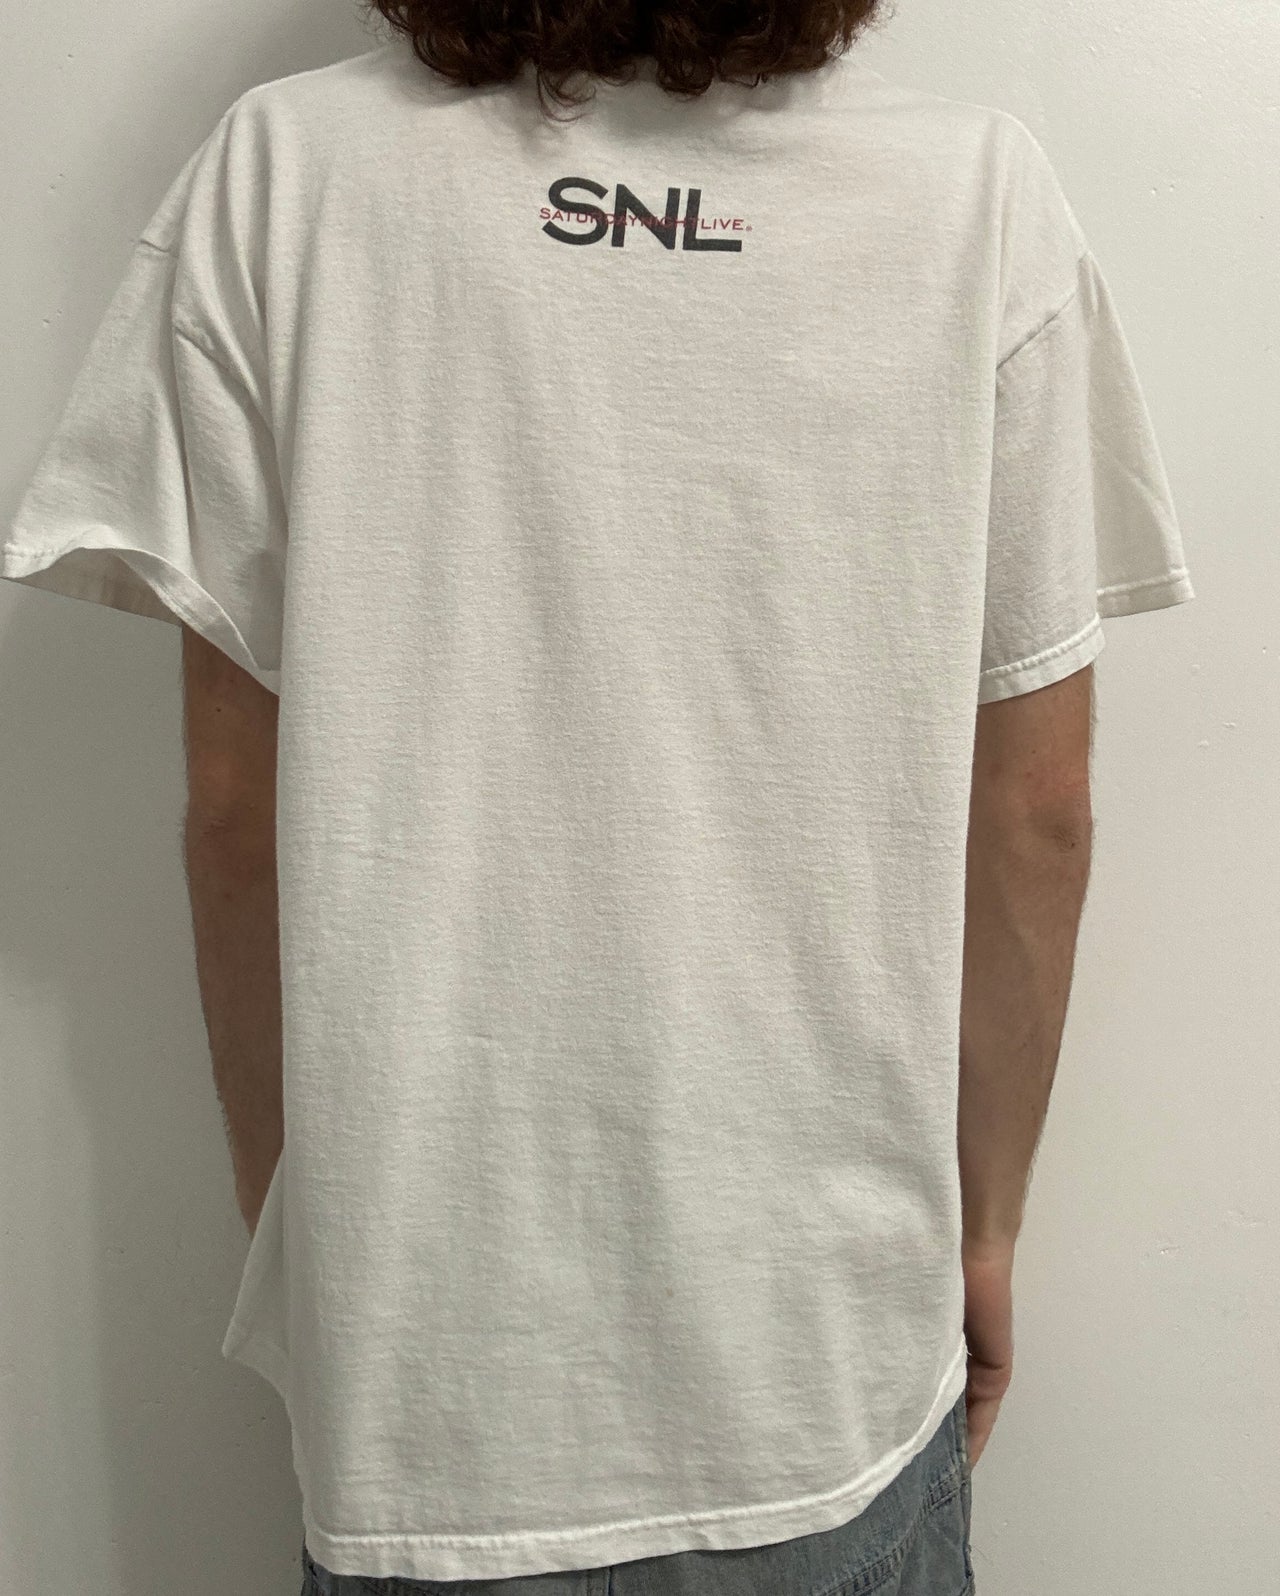 90s SNL Tee